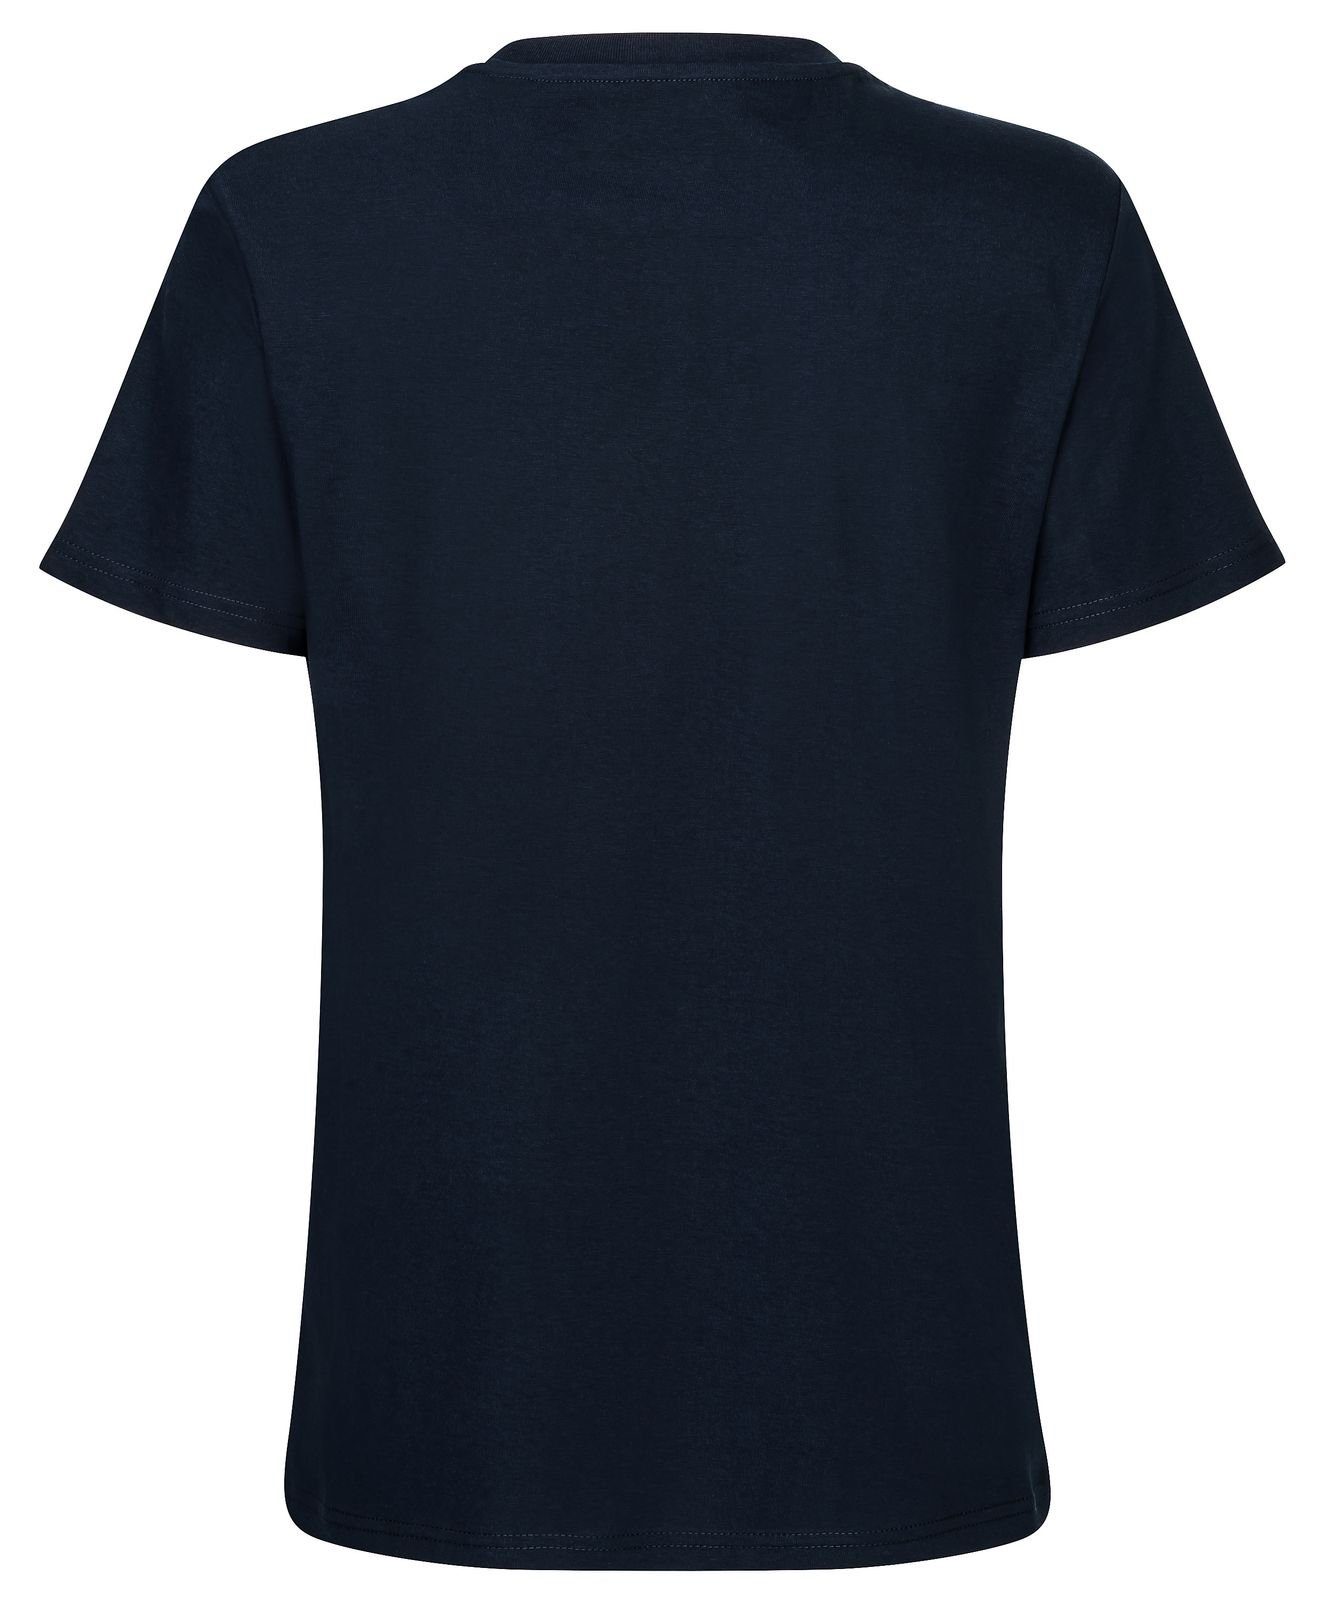 Gradnetz T-Shirt basic leather unisex & Biobaumwolle nachhaltig dunkelblau 100% fair